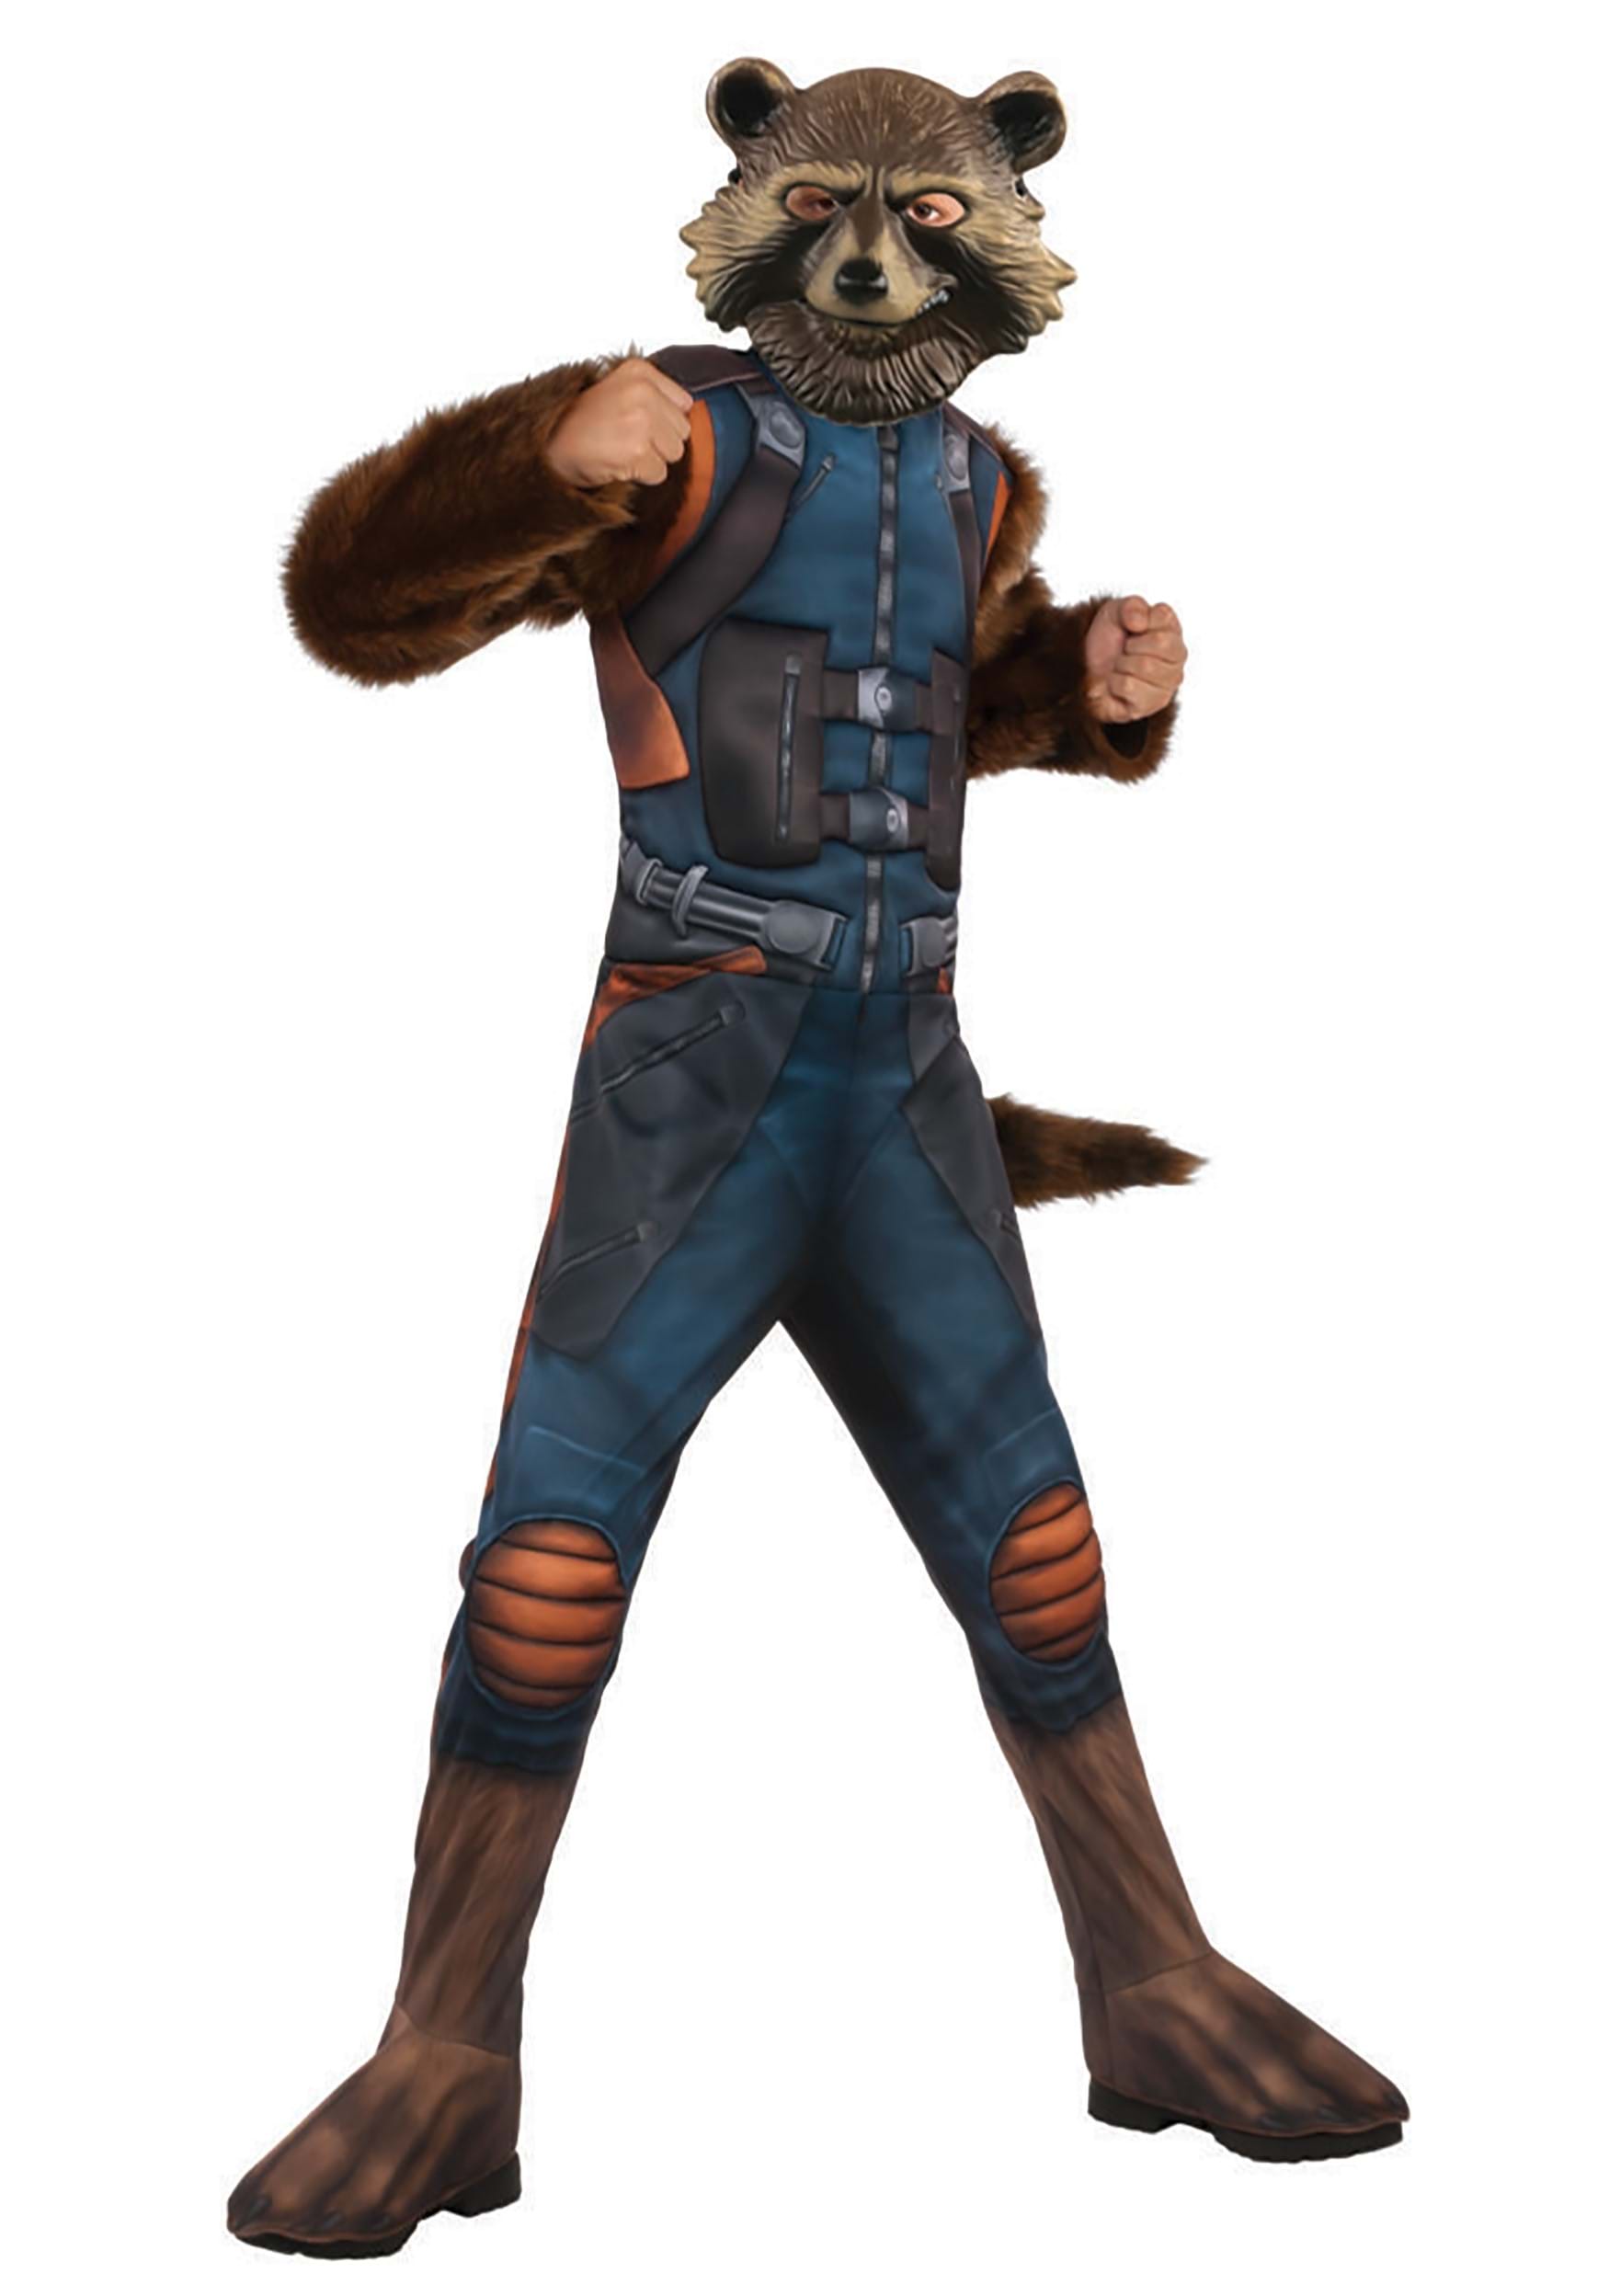 Rocket Raccoon Avengers 4 Deluxe Child Costume